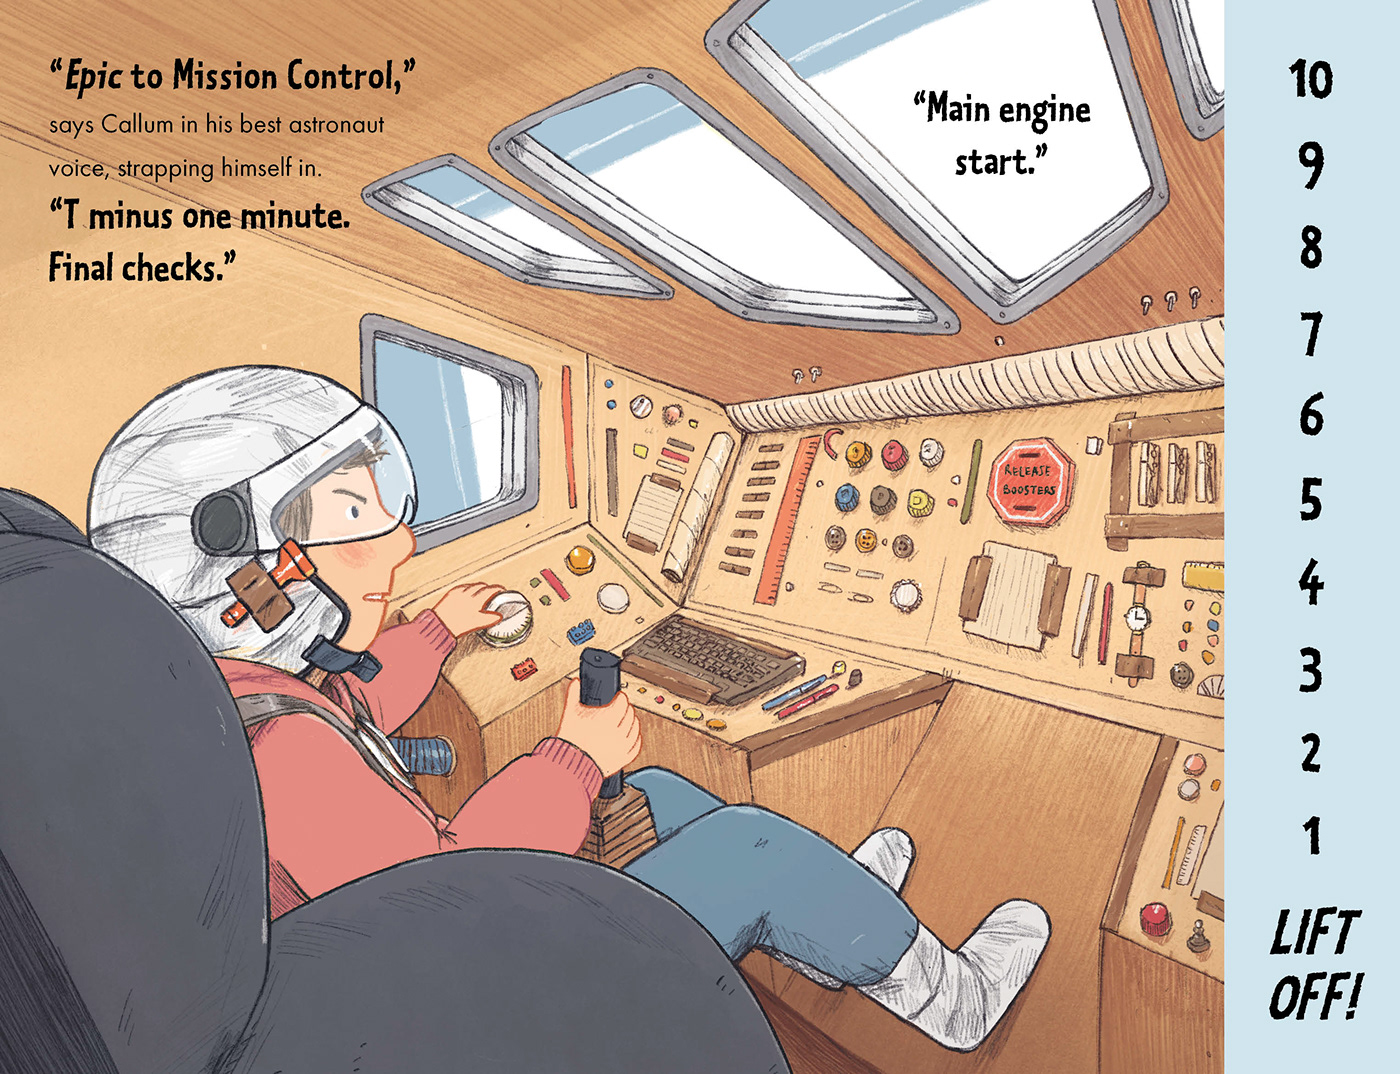 childrens books Graphic novels ILLUSTRATION  book design Space  cardboard rocket